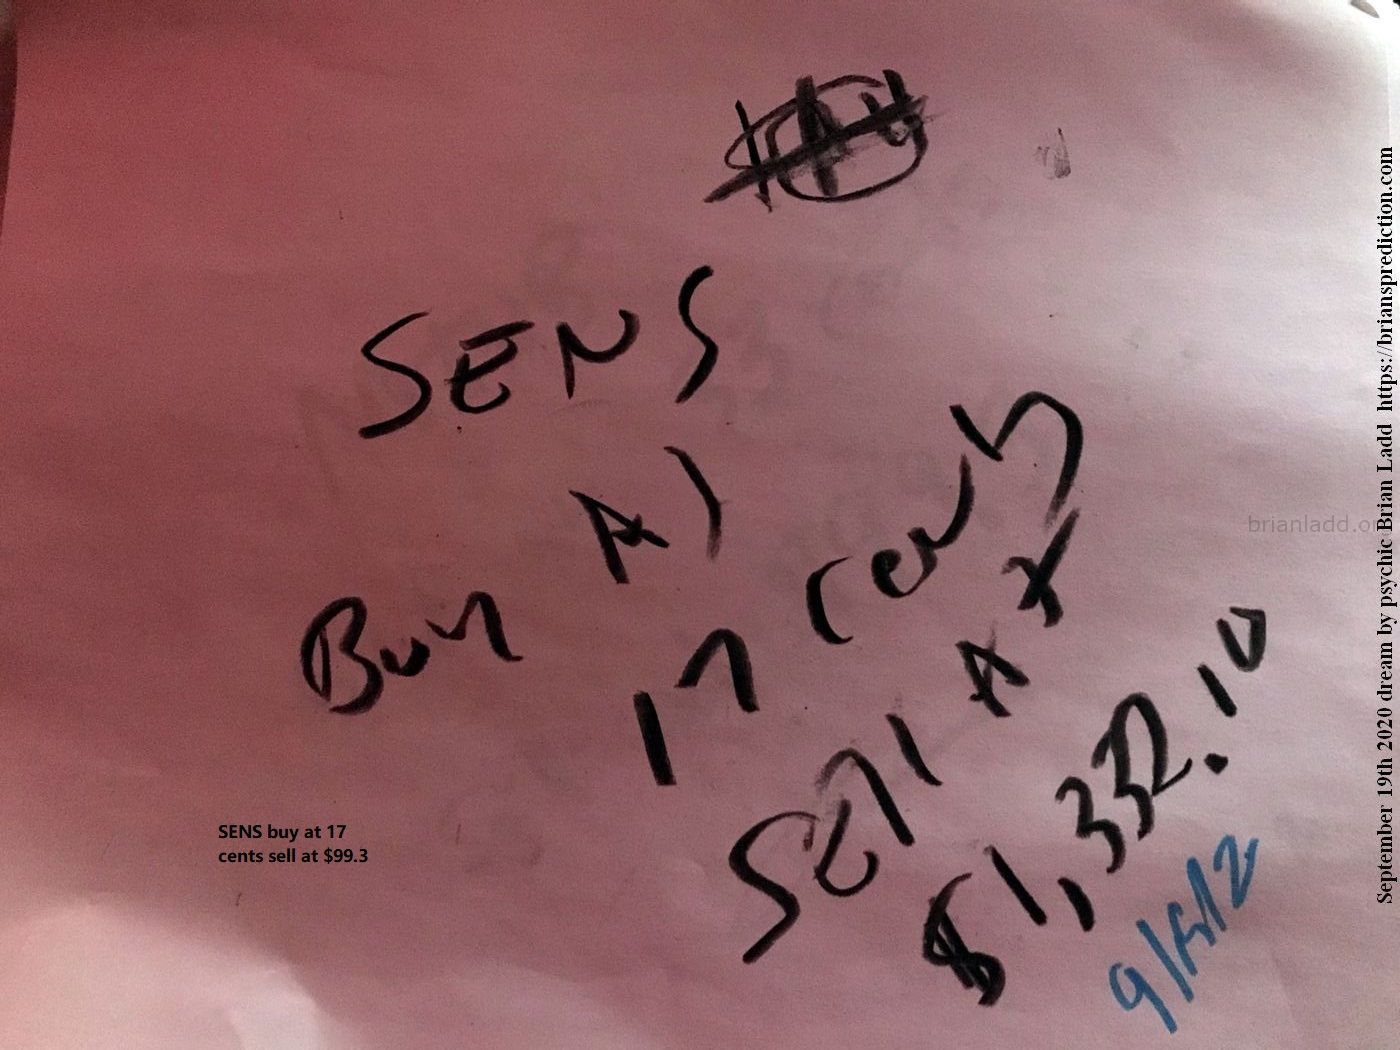 13659 19 September 2020 1 - Sens Buy At 17 Cents Sell At $99.3...
Sens Buy At 17 Cents Sell At $99.3
